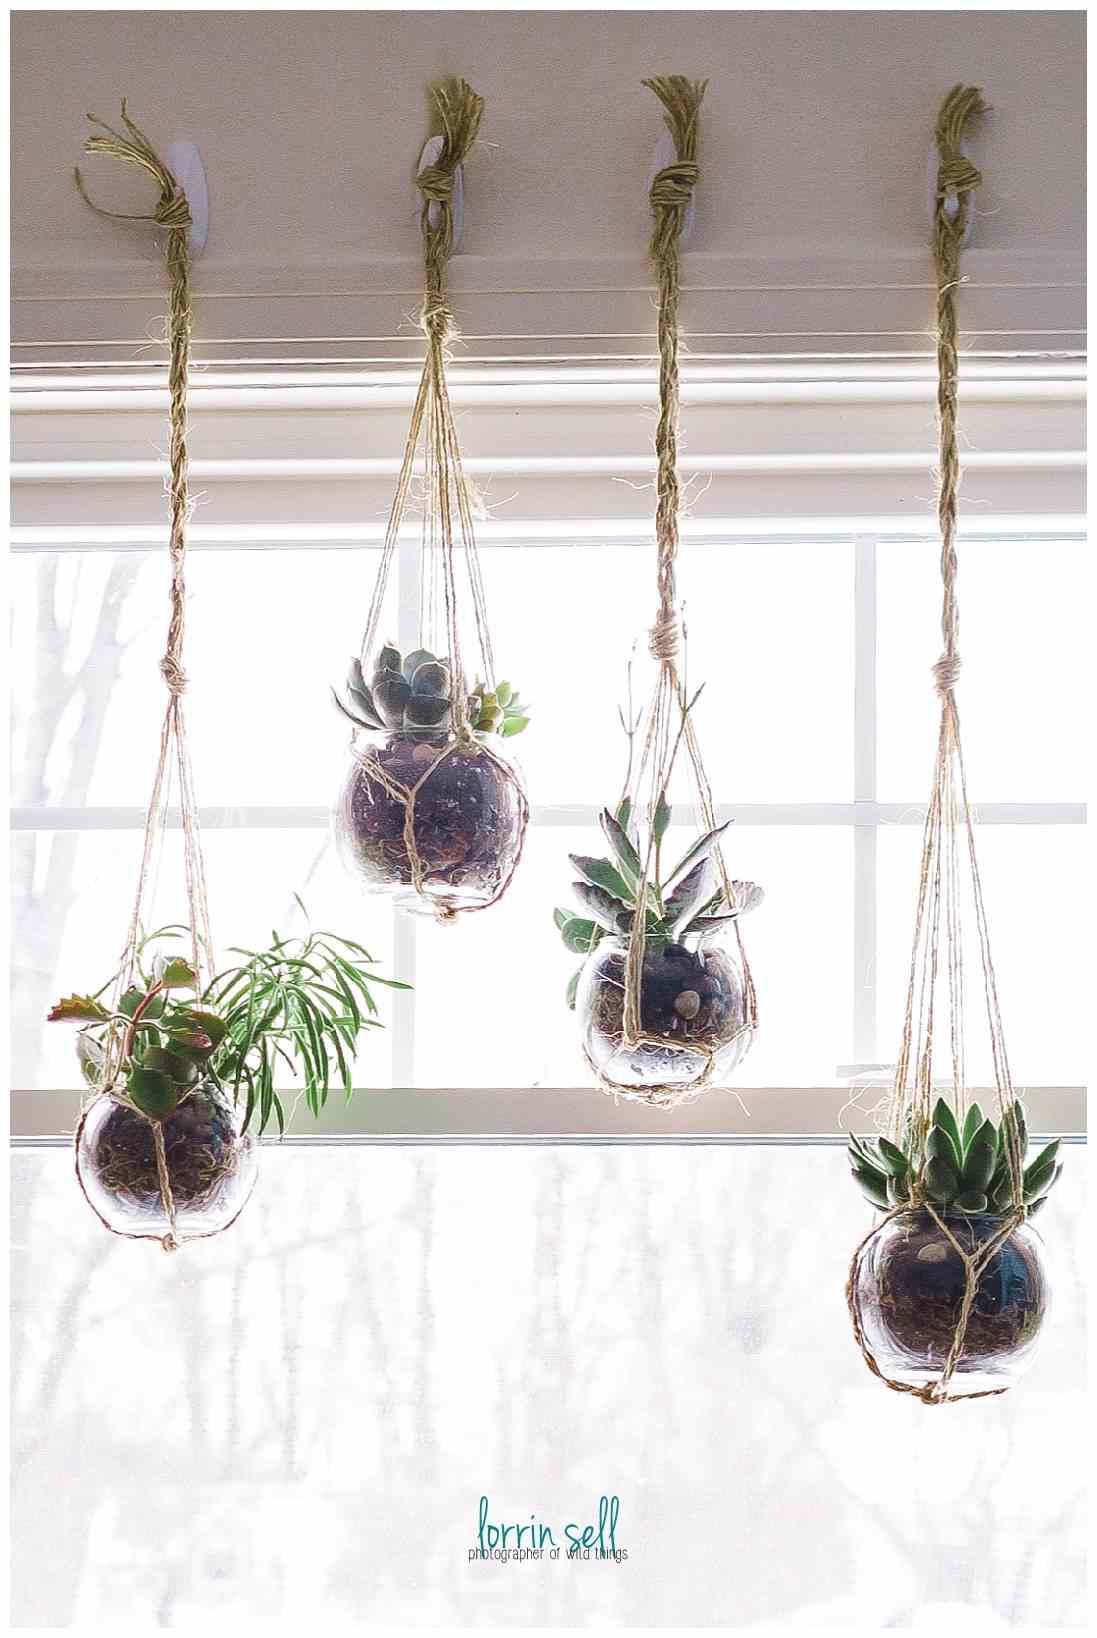 Plantas em recipientes de vidro penduradas na frente da janela